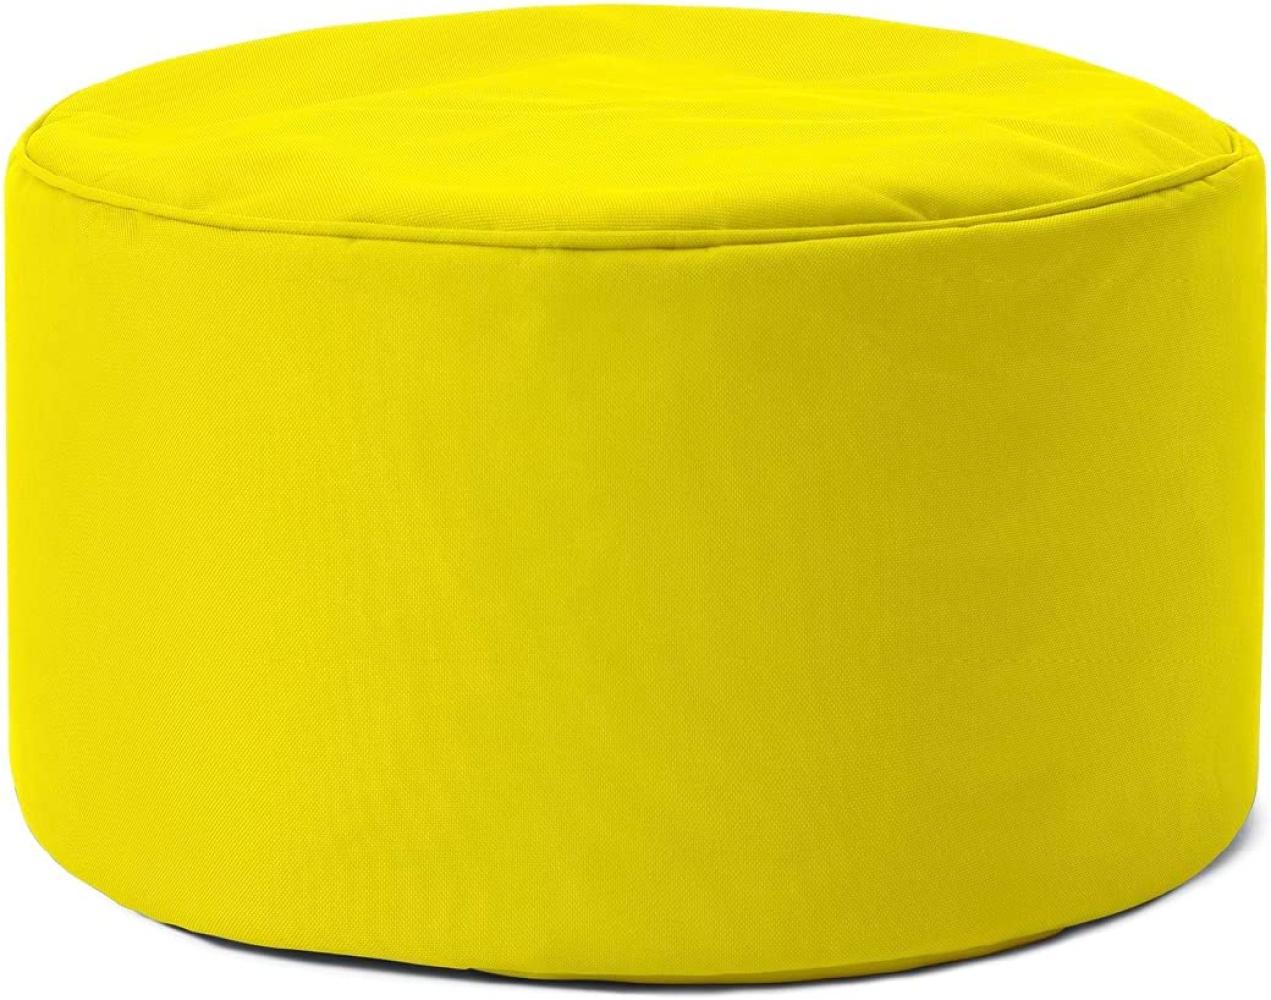 Lumaland Indoor Outdoor Sitzhocker 25 x 45 cm - Runder Sitzpouf, Sitzsack Bodenkissen, Sitzkissen, Bean Bag Pouf - Wasserabweisend - Pflegeleicht - ideal für Kinder und Erwachsene - Gelb Bild 1